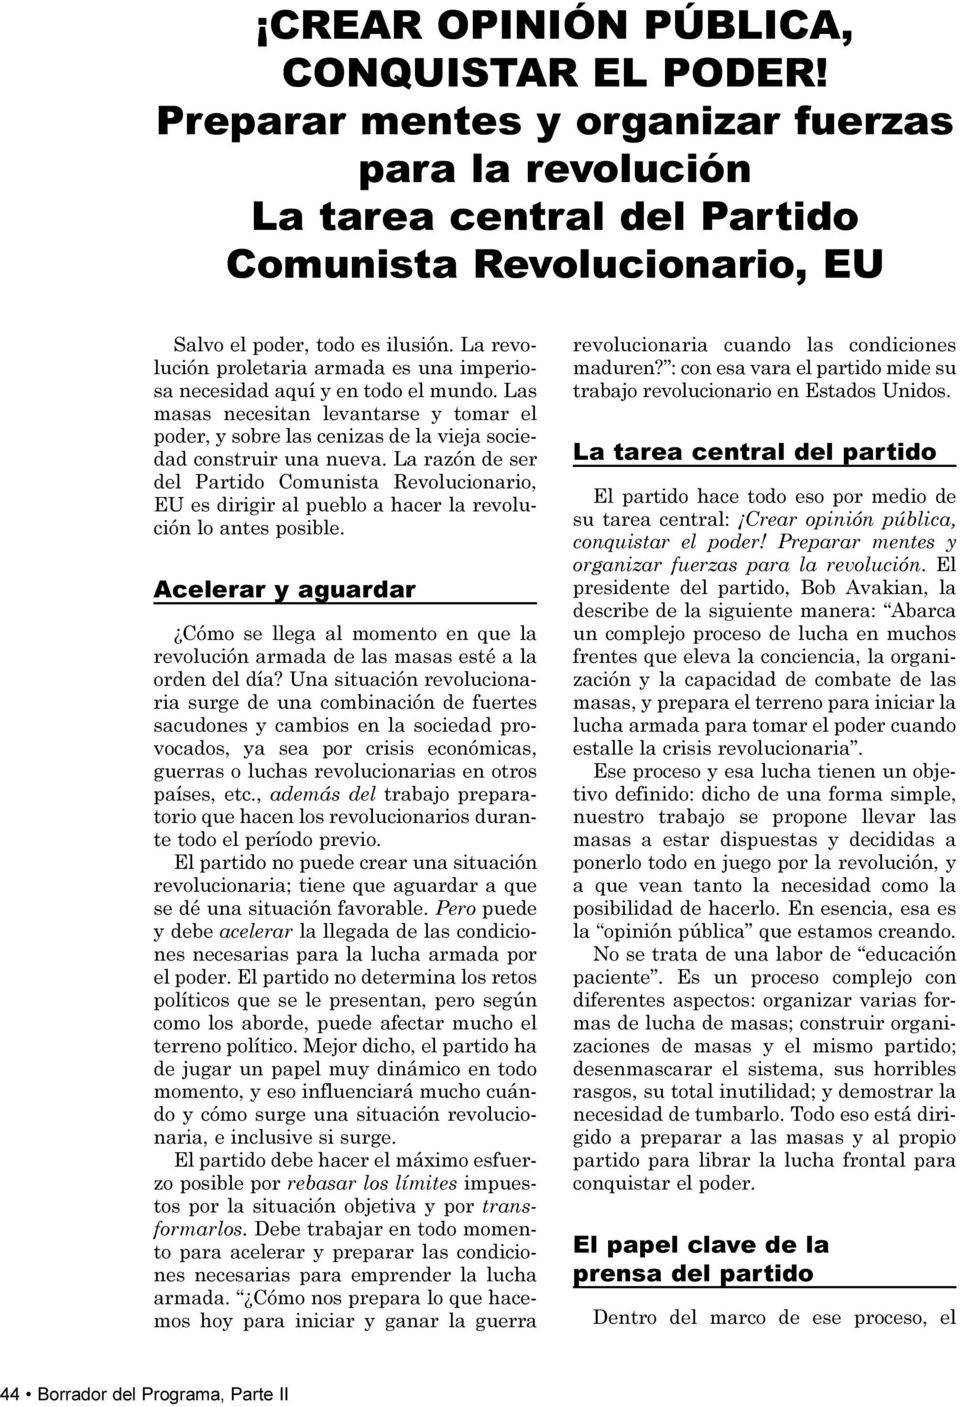 La razón de ser del Partido Comunista Revolucionario, EU es dirigir al pueblo a hacer la revolución lo antes posible.